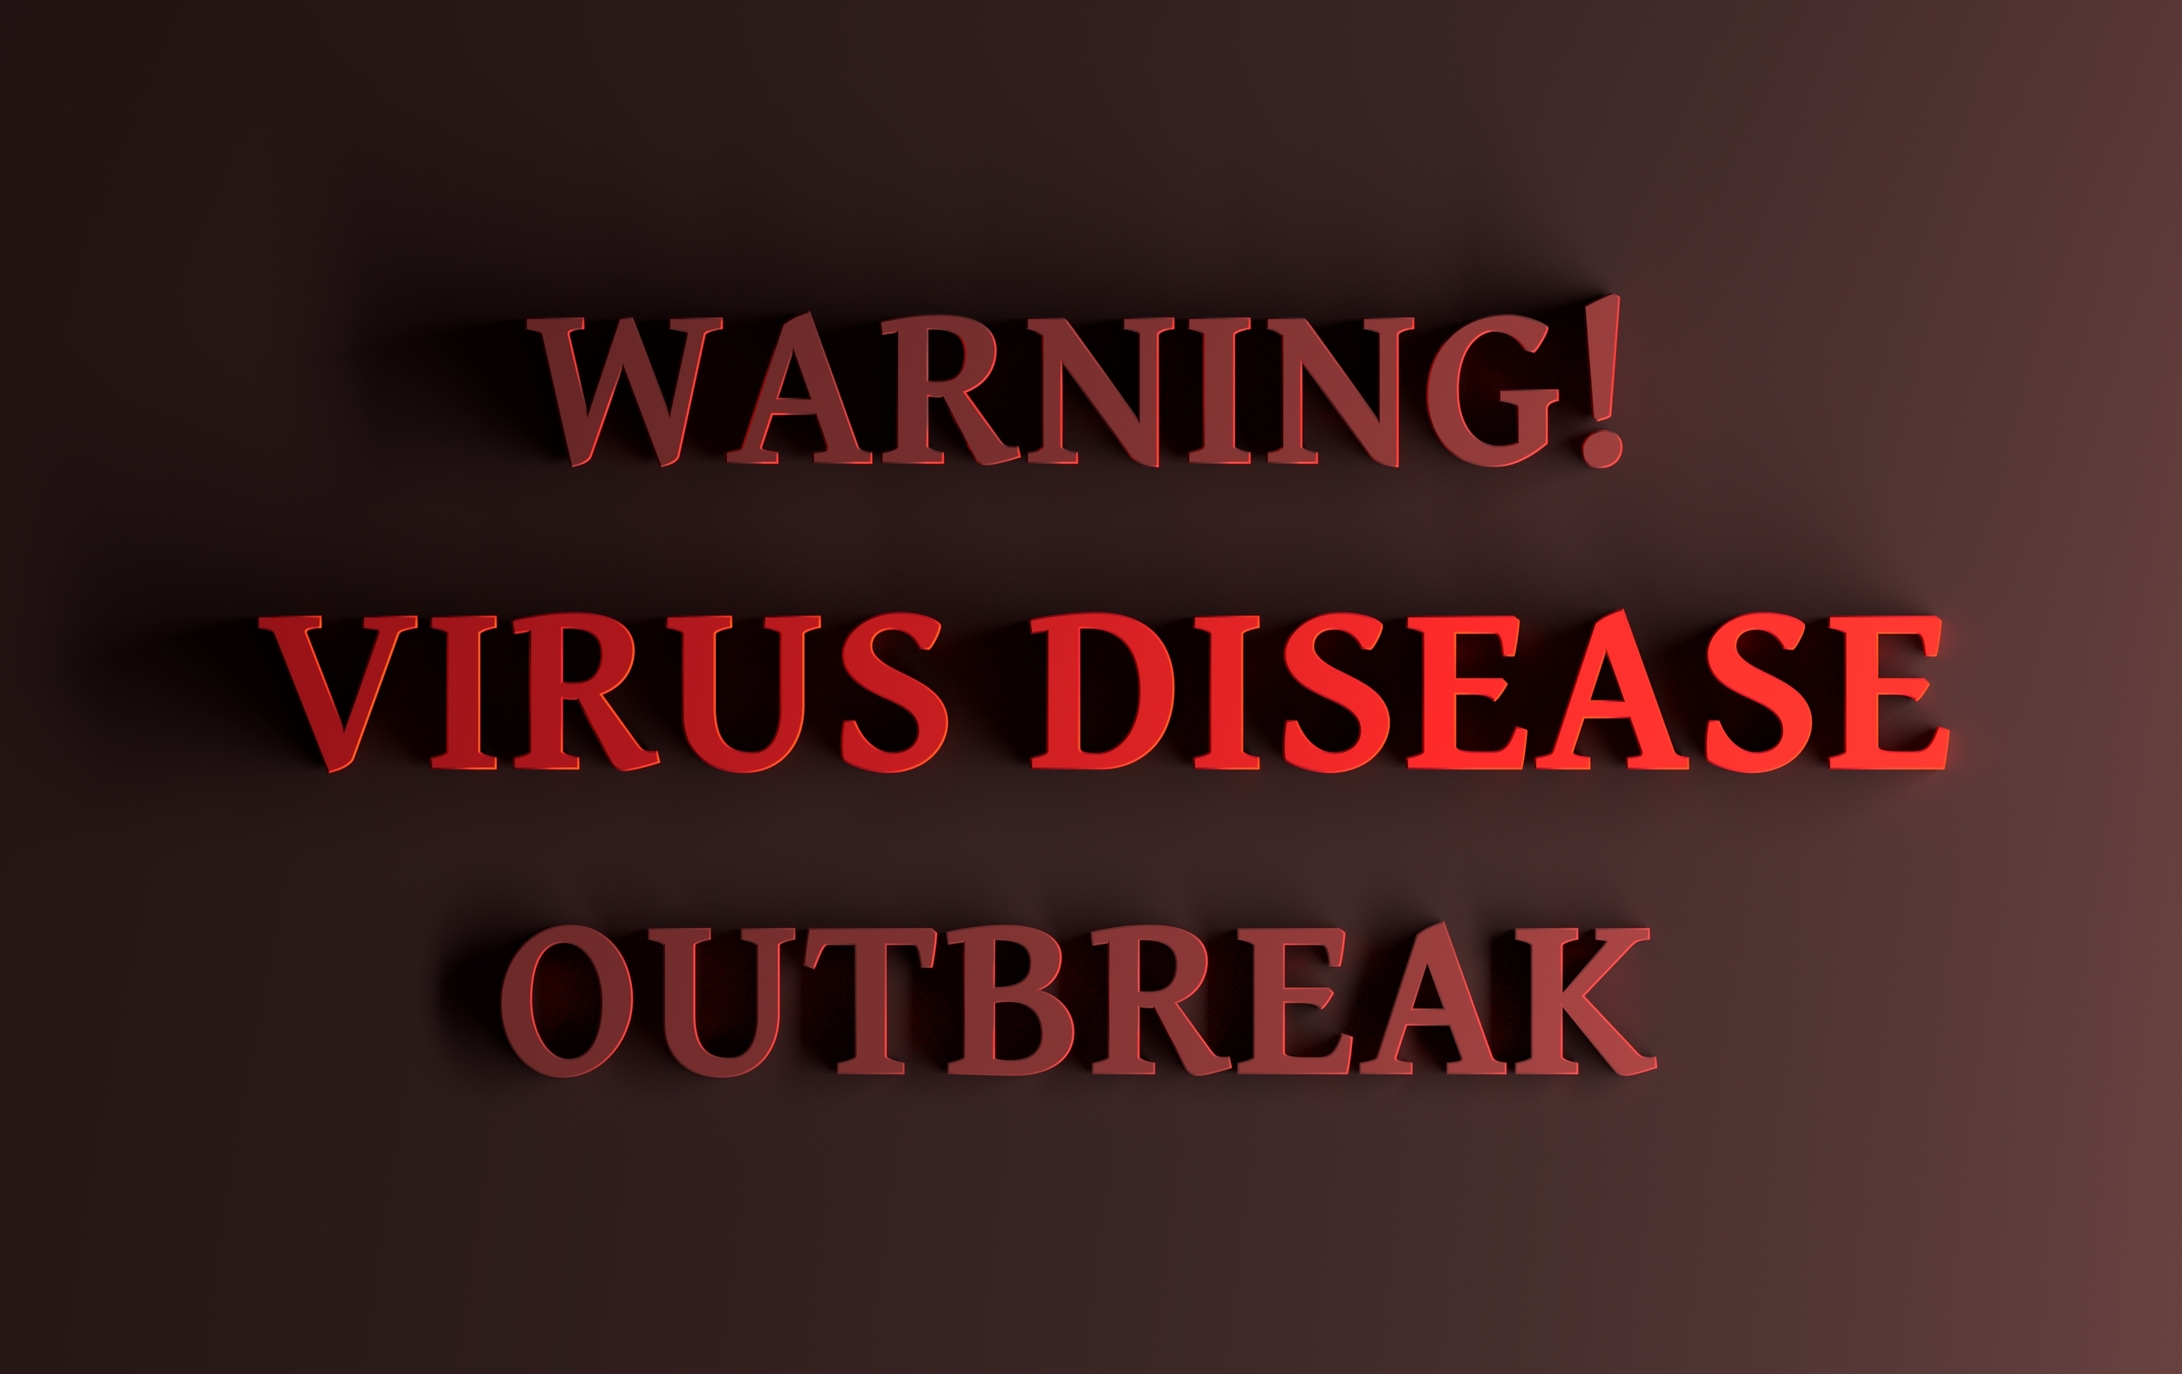 dreamstime_virus outbreak hepatitis A